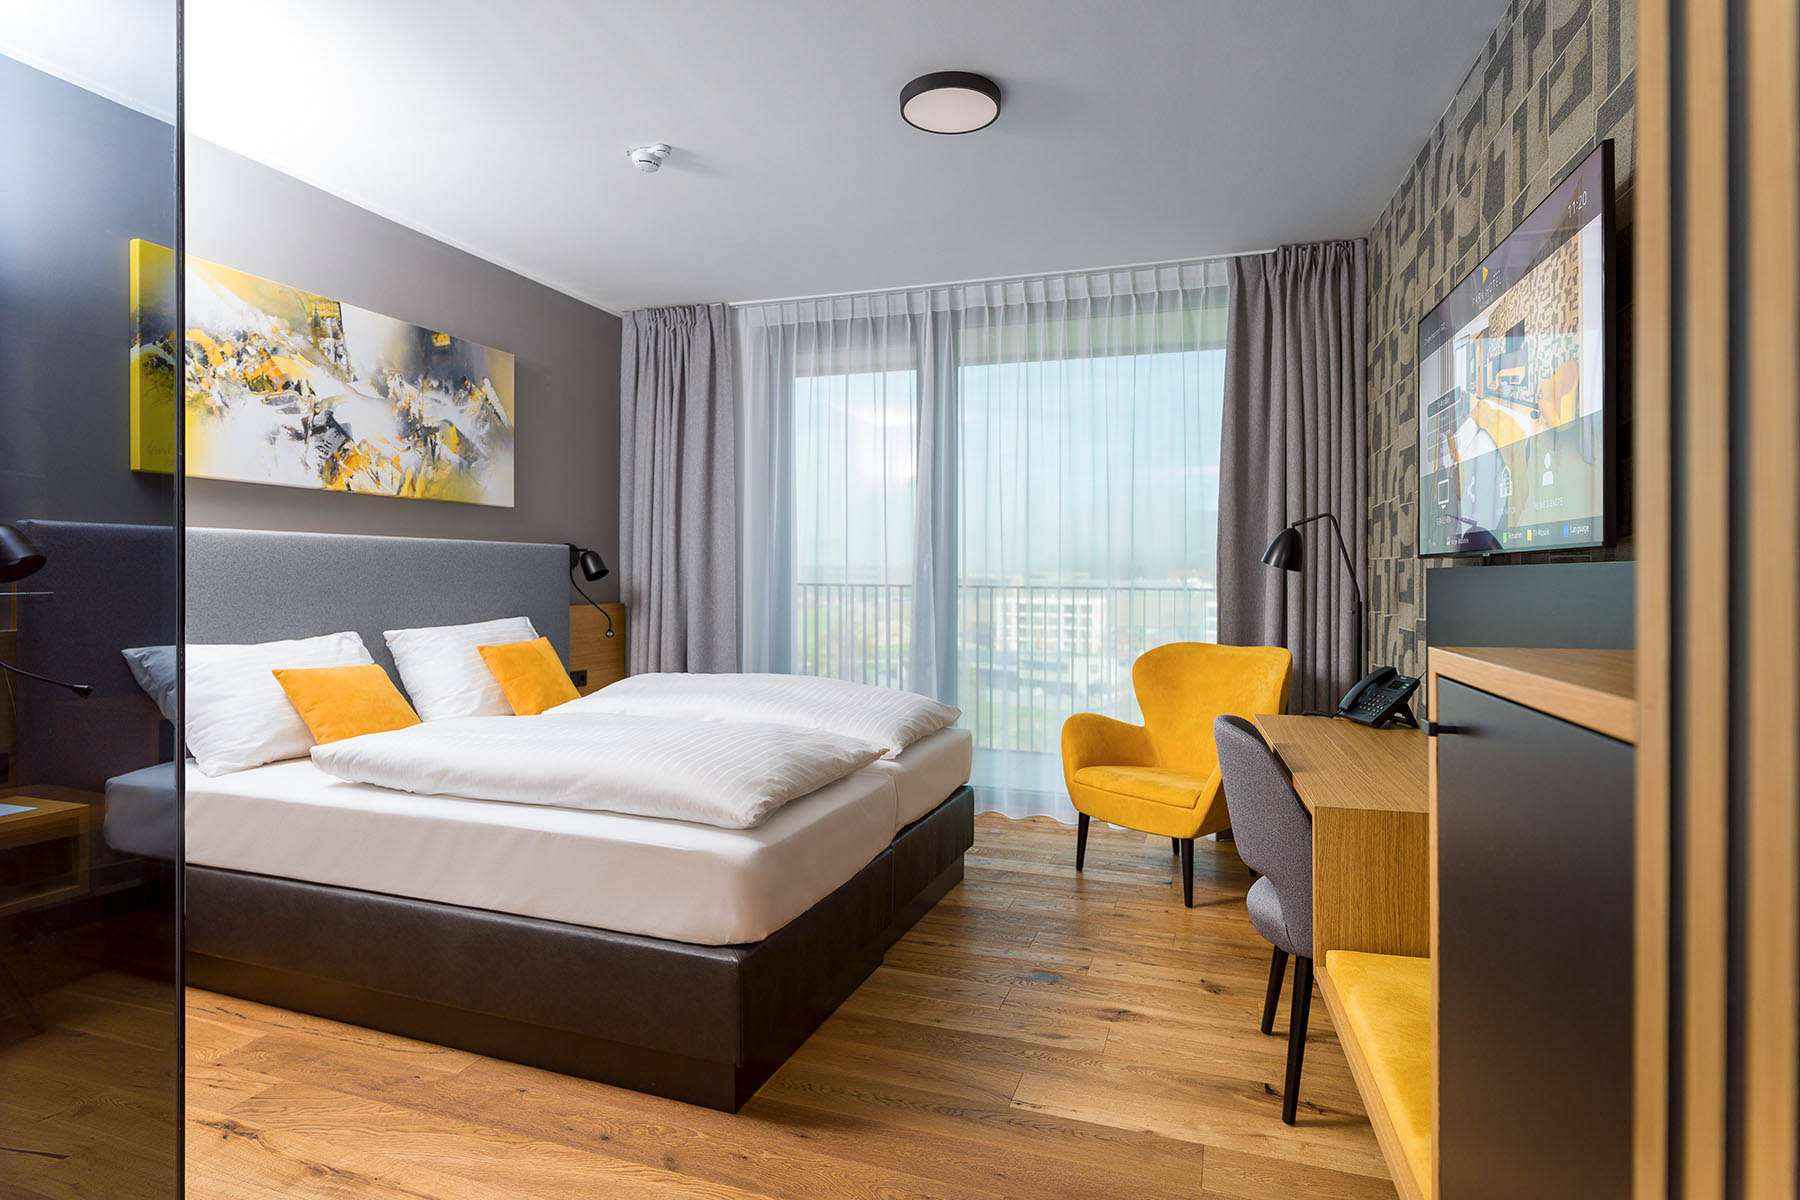 93 Hotelzimmer mit gelben Sesseln